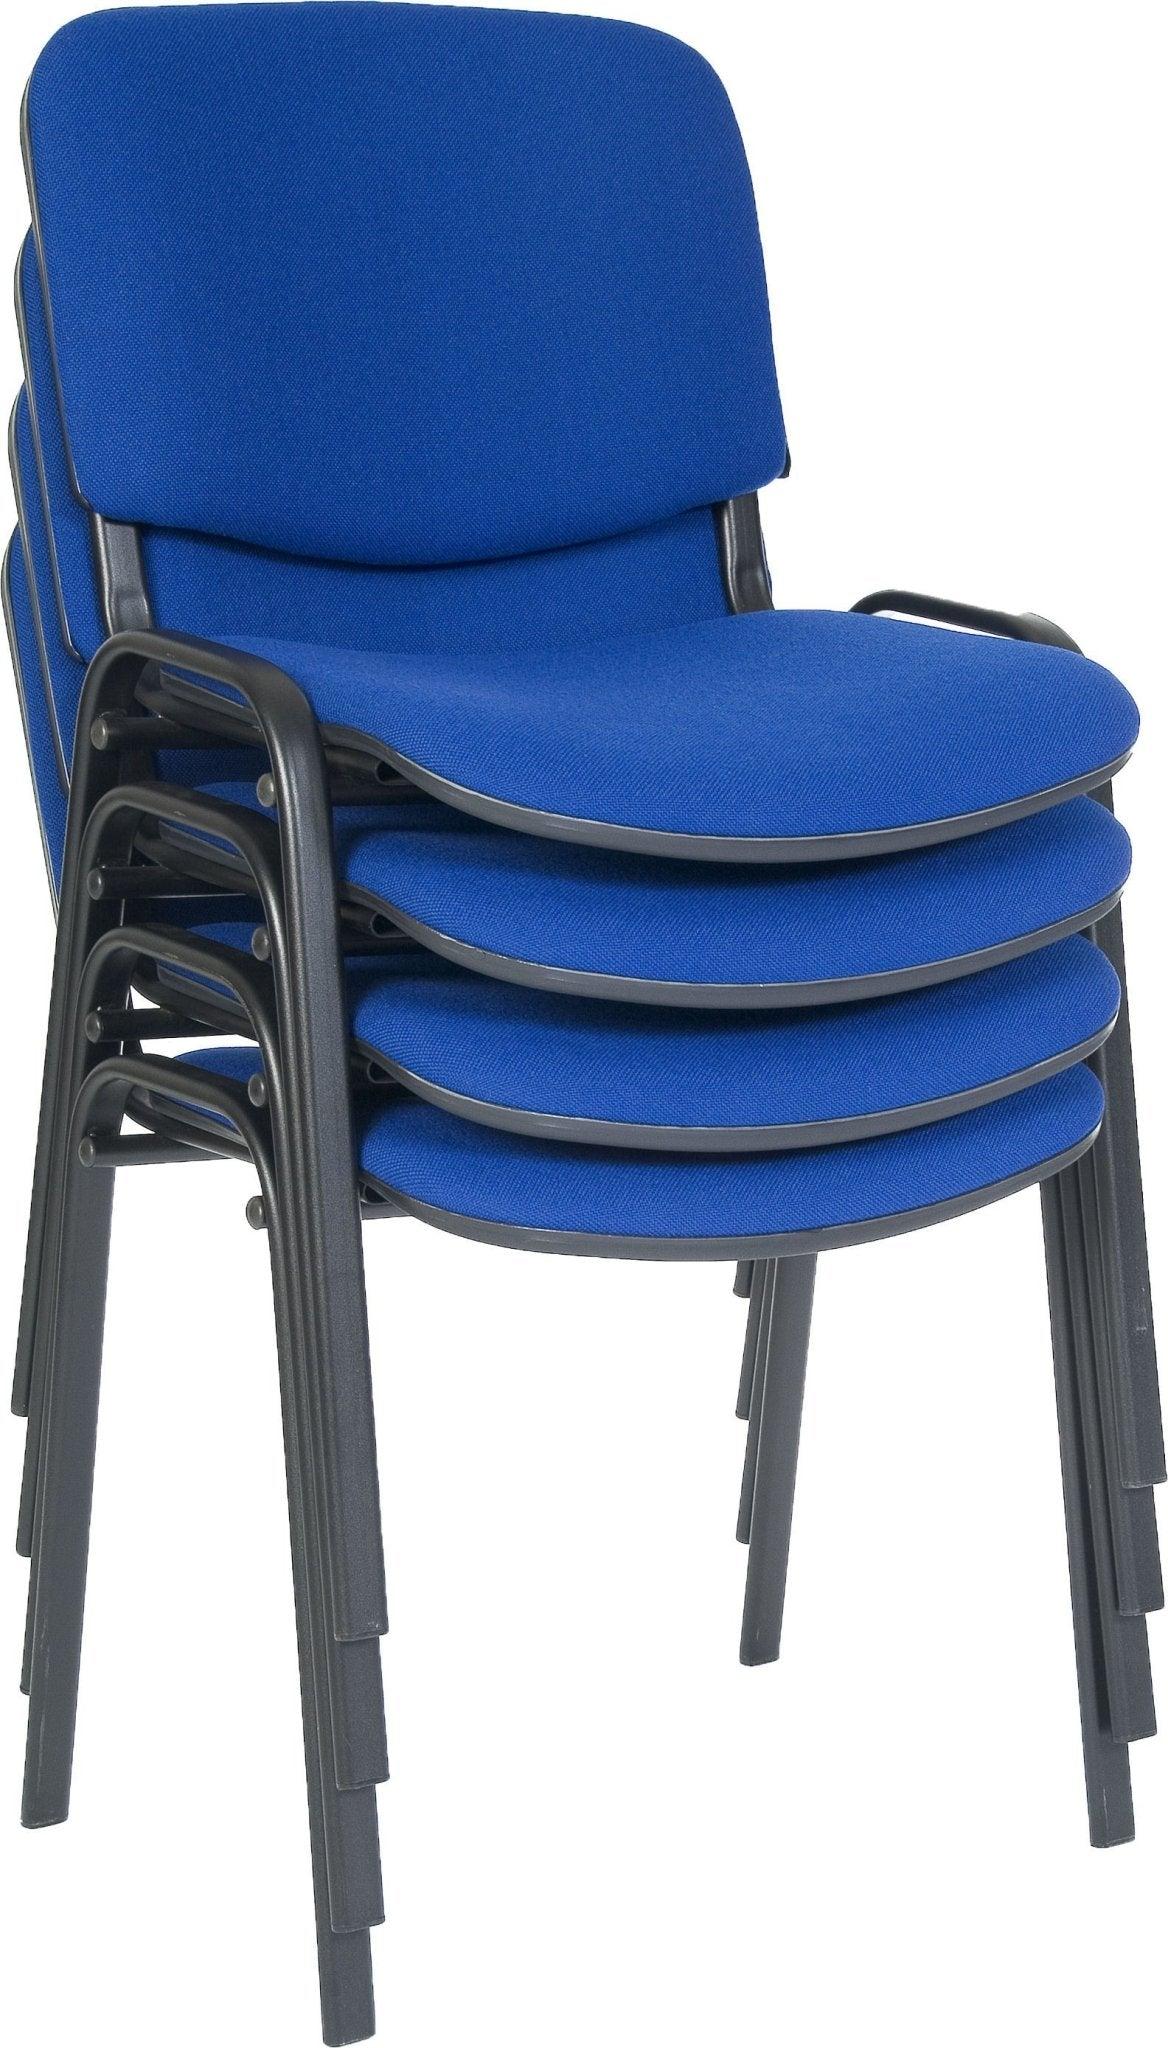 Conference room chair (blue) - crimblefest furniture - image 2